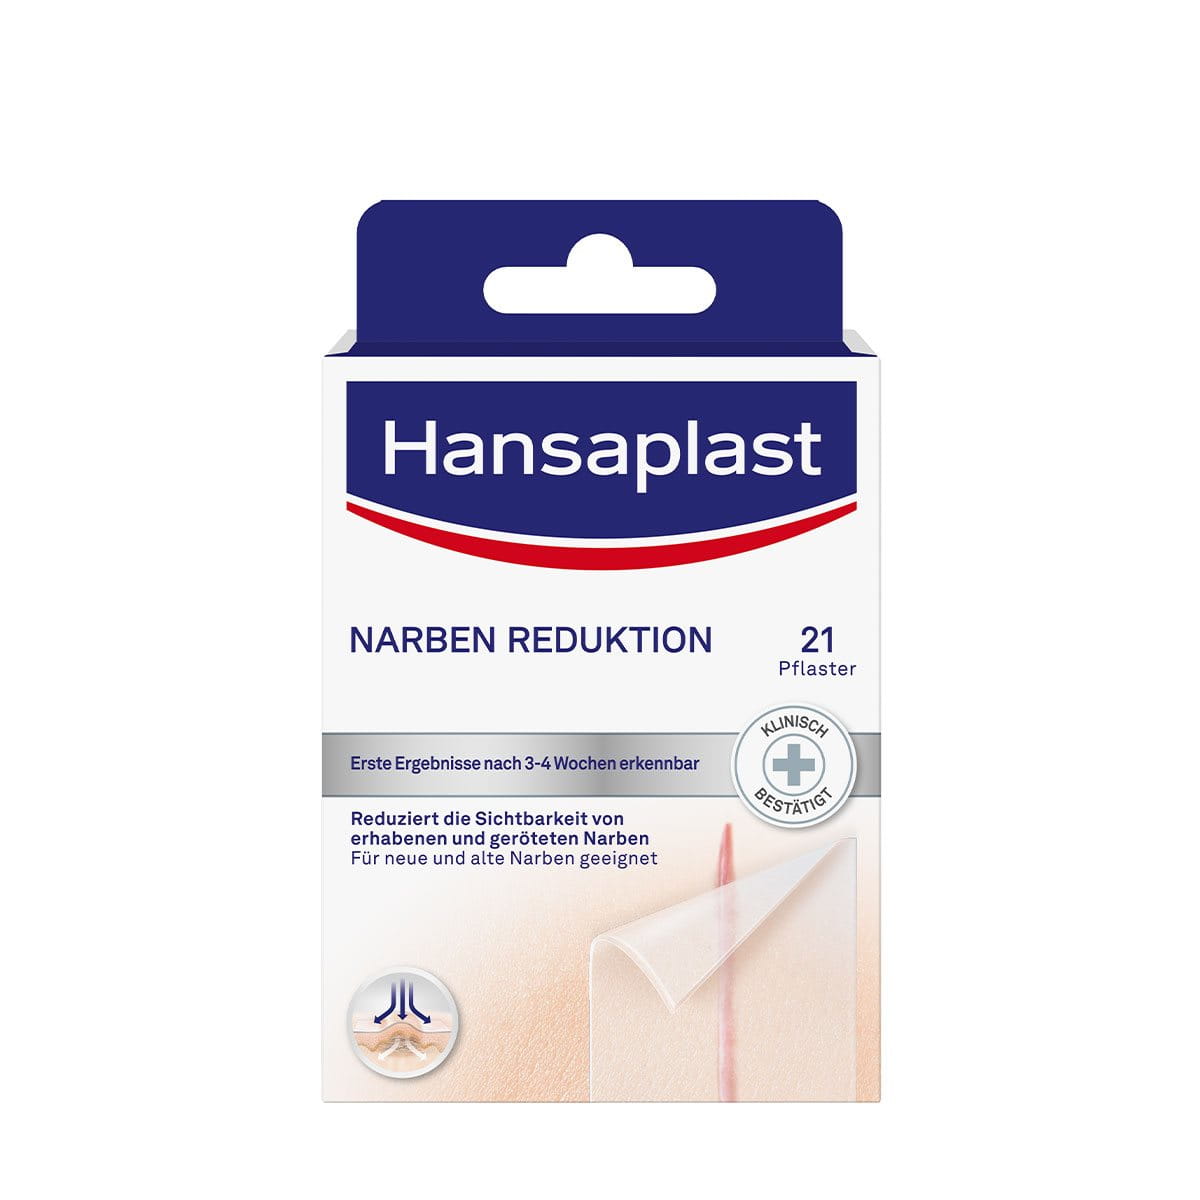 Hansaplast – Hornhaut-Pflaster